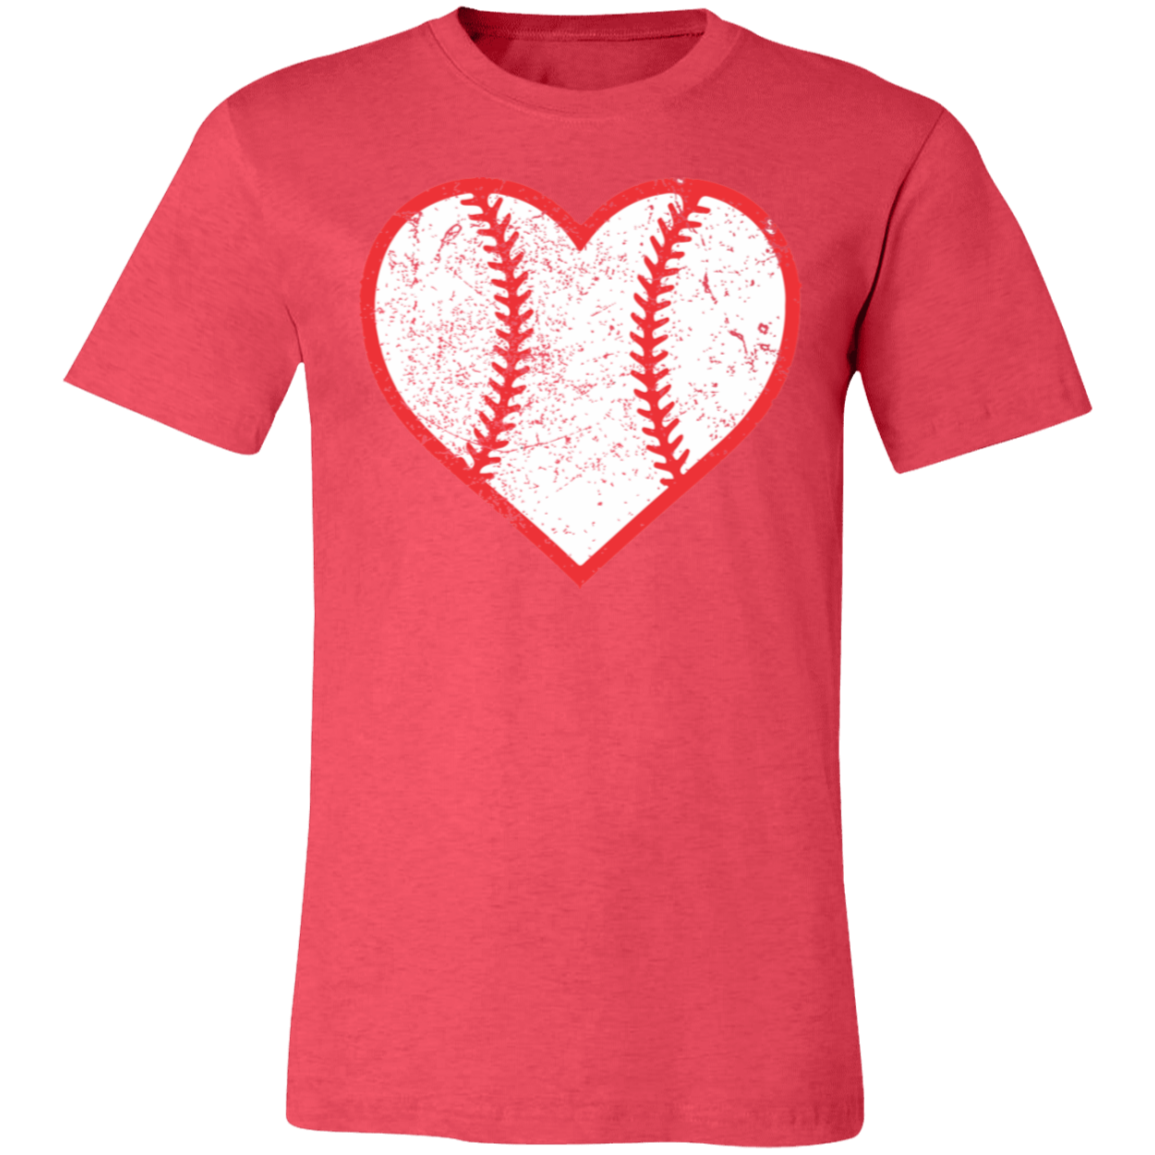 Baseball Heart Premium Women's Tee - Game Day Getup